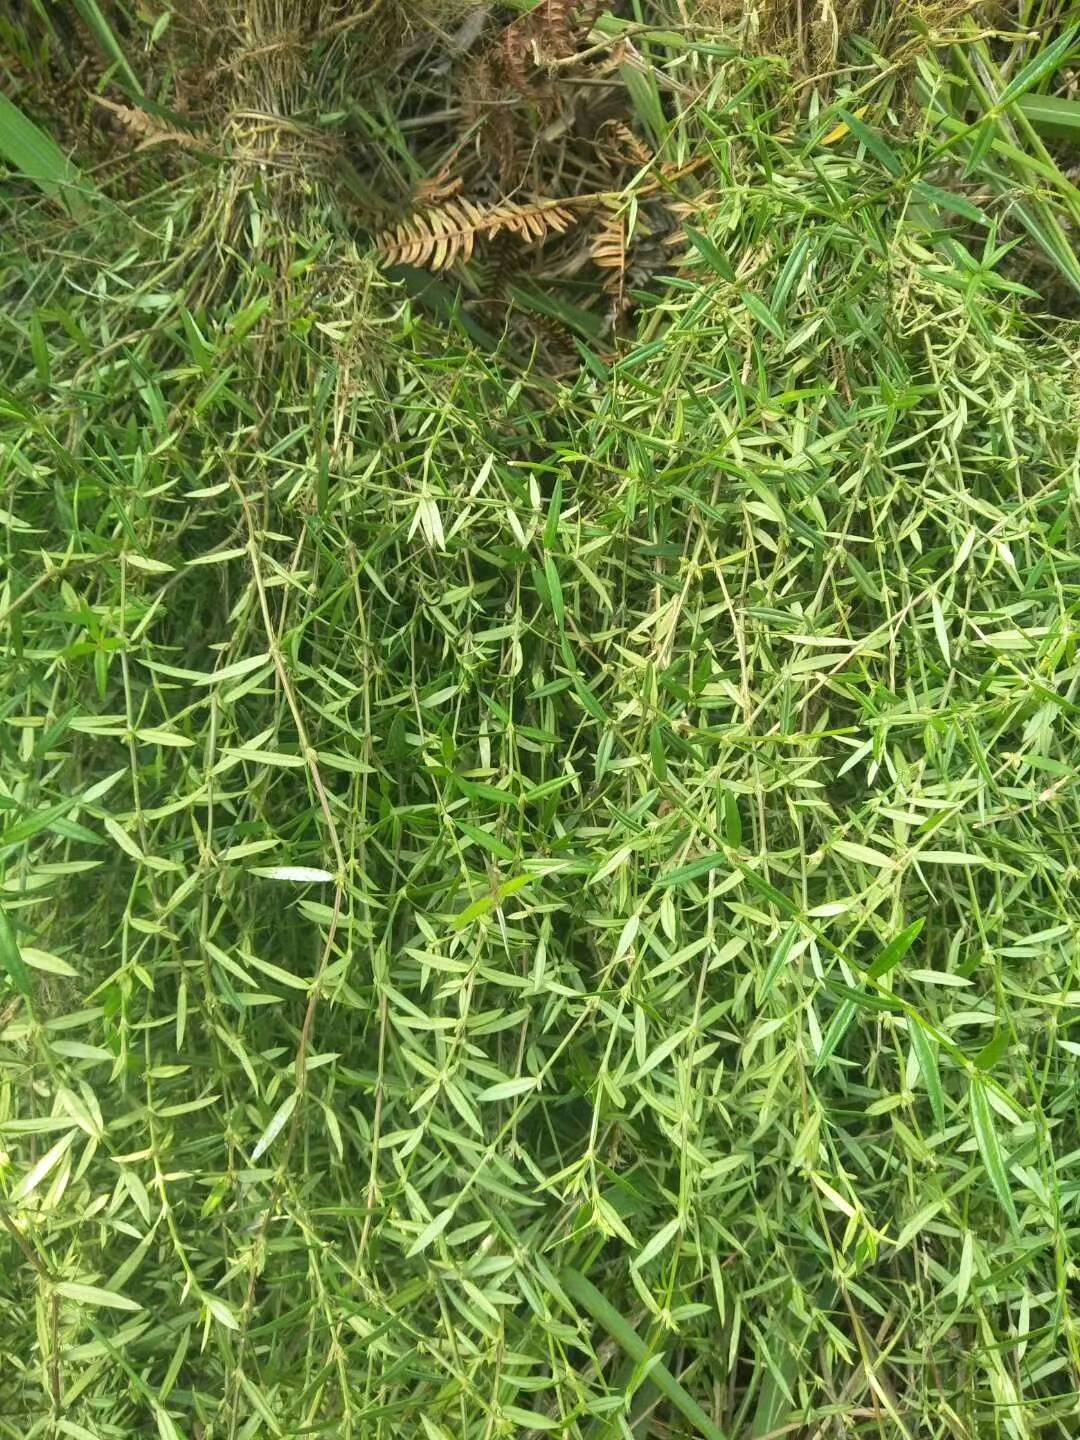 野生白花蛇舌草，当天拔草，需要的联系。
13013315443，同微信